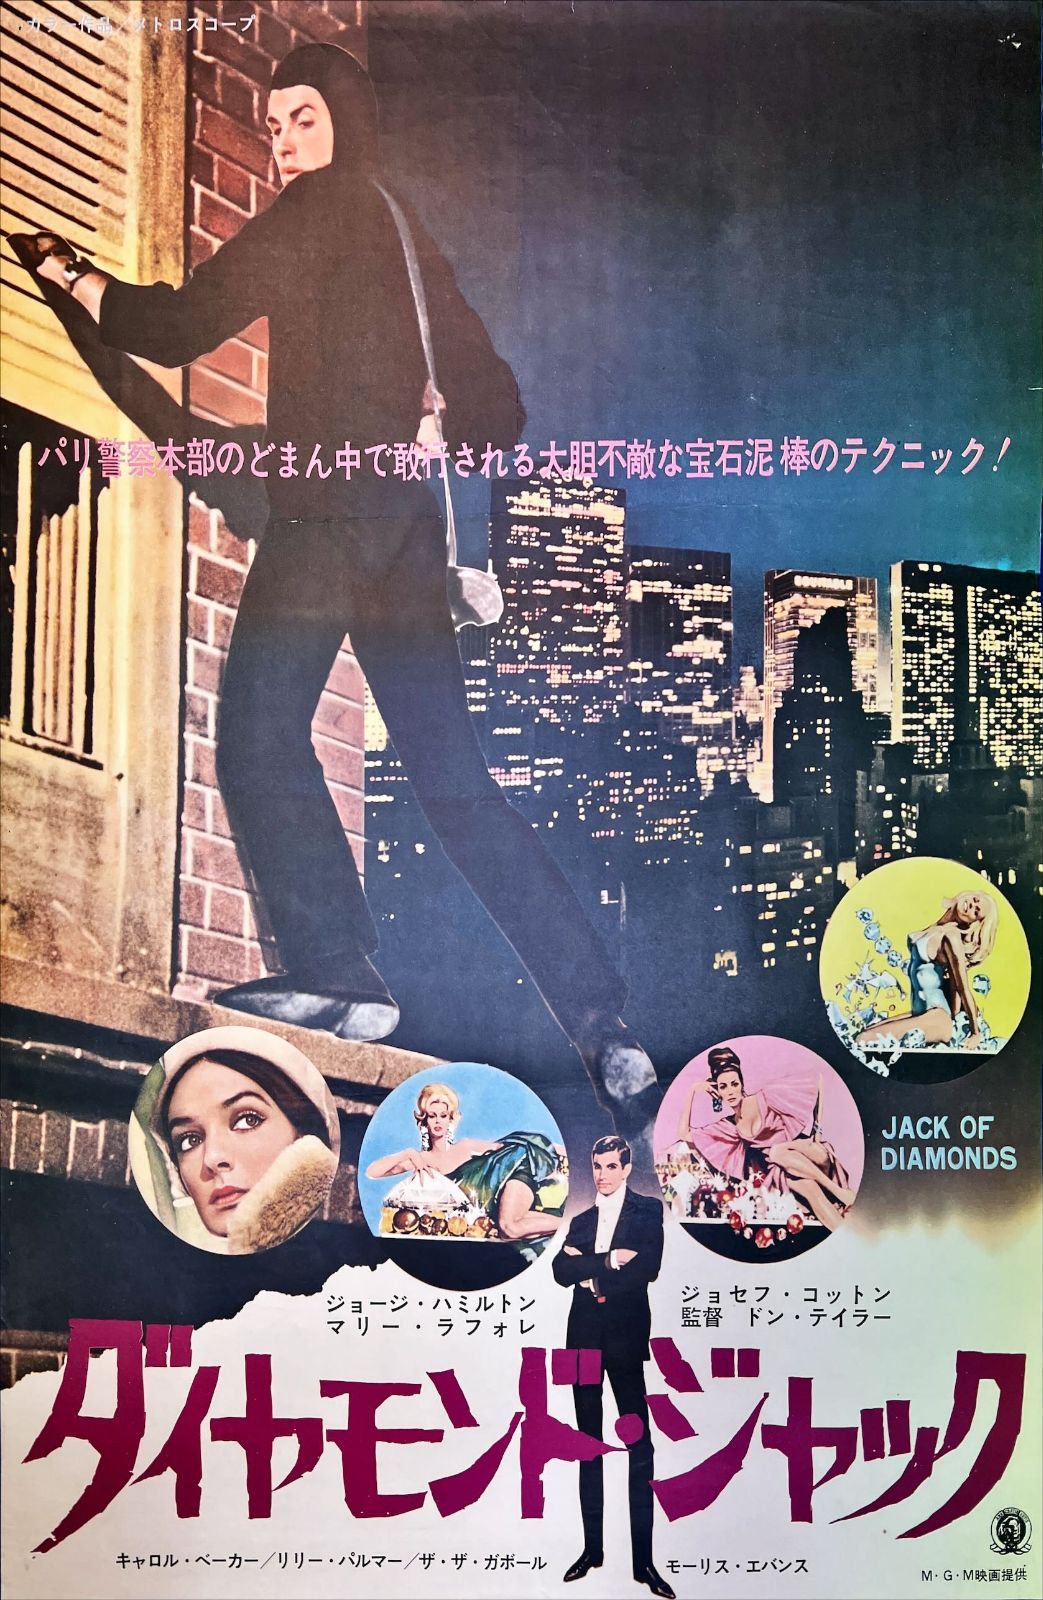 ダイヤモンド・ジャック』映画B2判オリジナルポスター - メルカリ